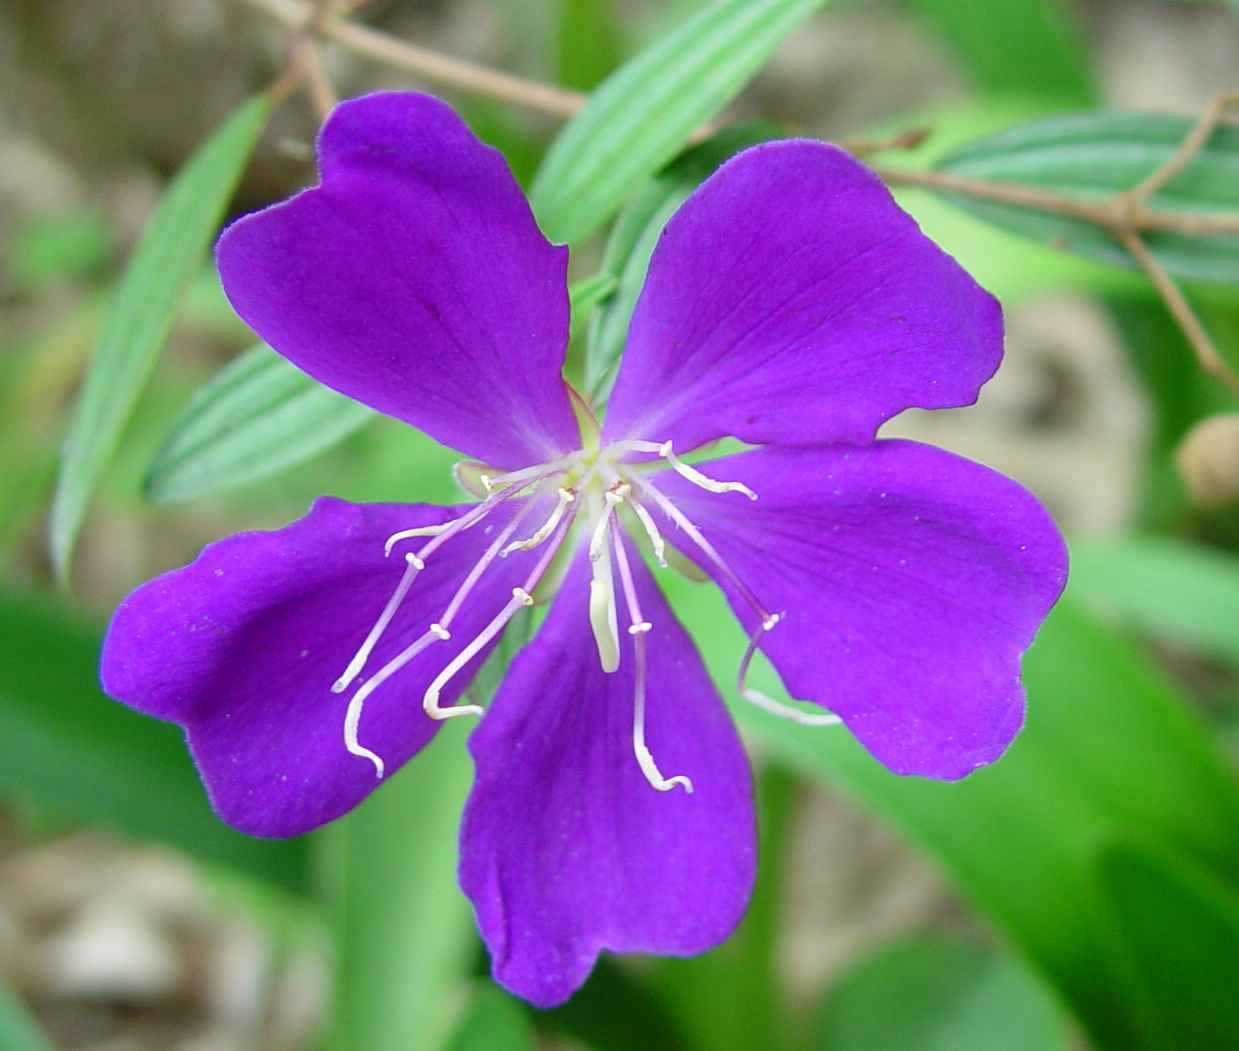 豔紫野牡丹